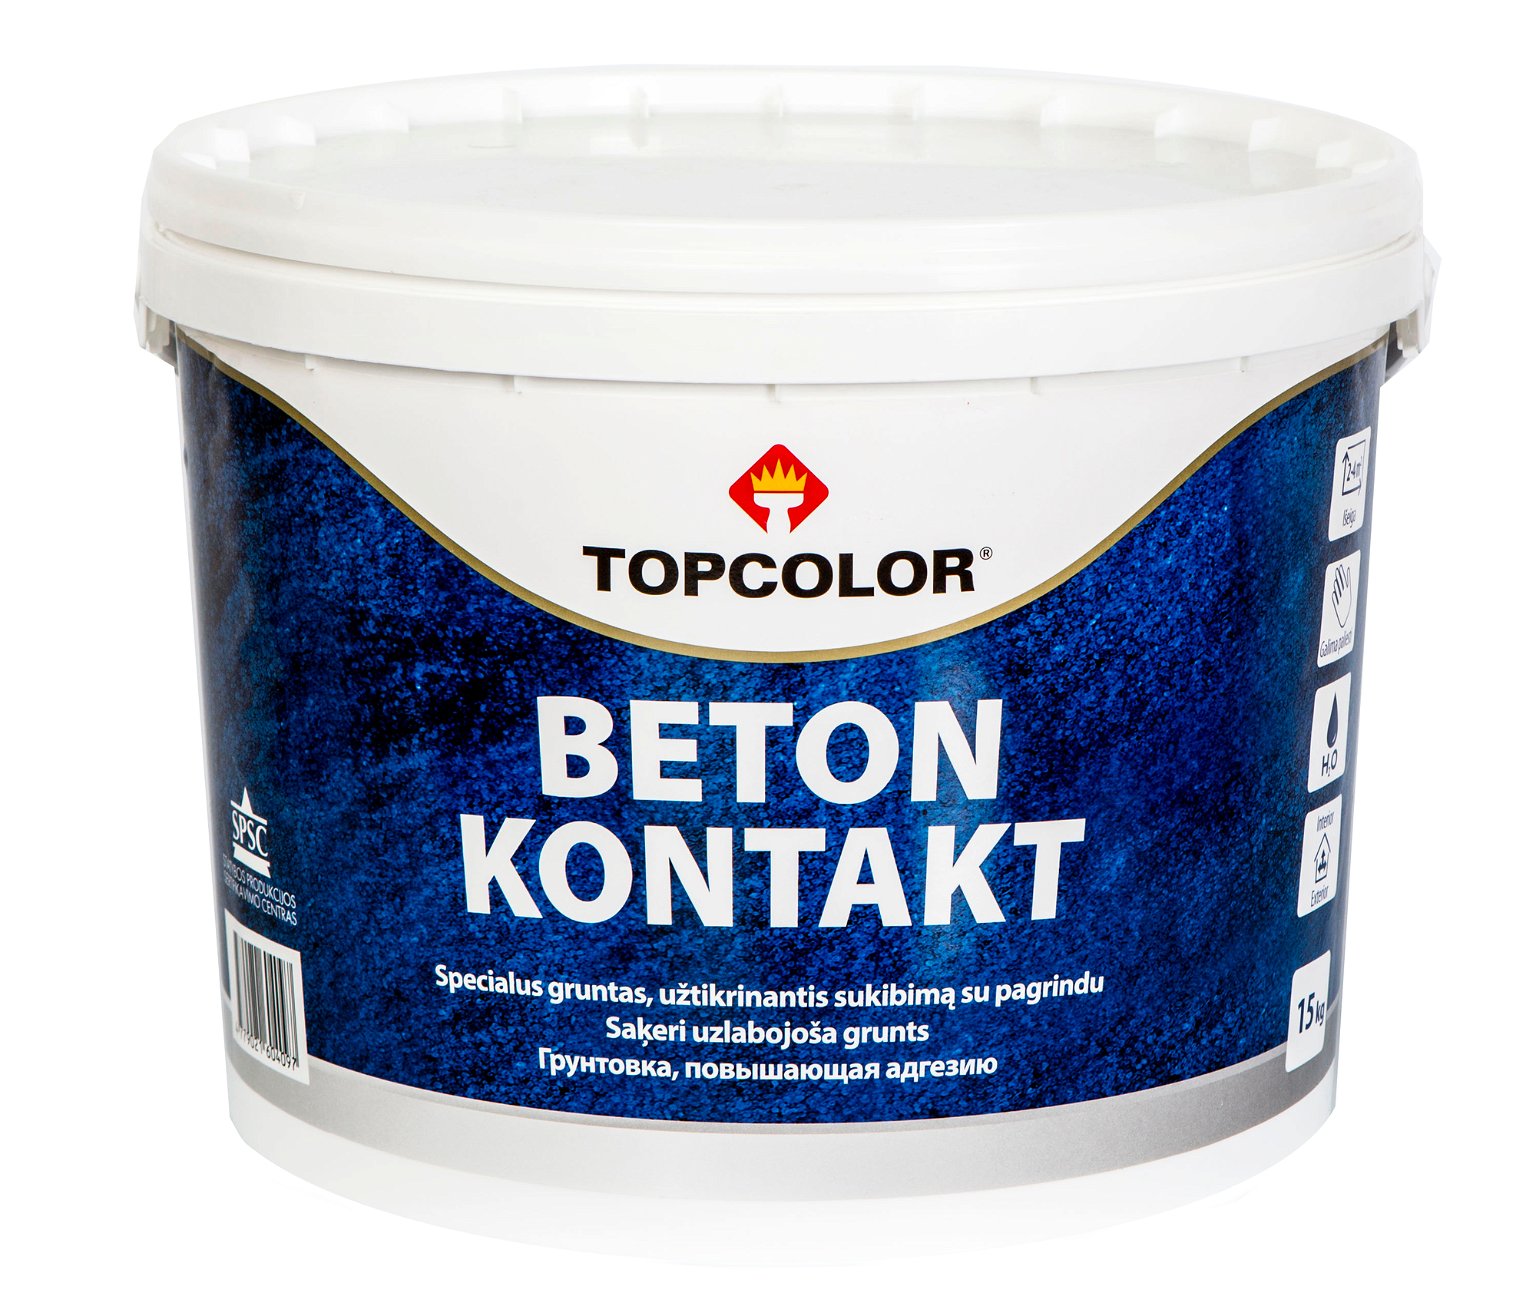 Sukibimą gerinantis gruntas TOPCOLOR BETON KONTAKT, 4,5 kg